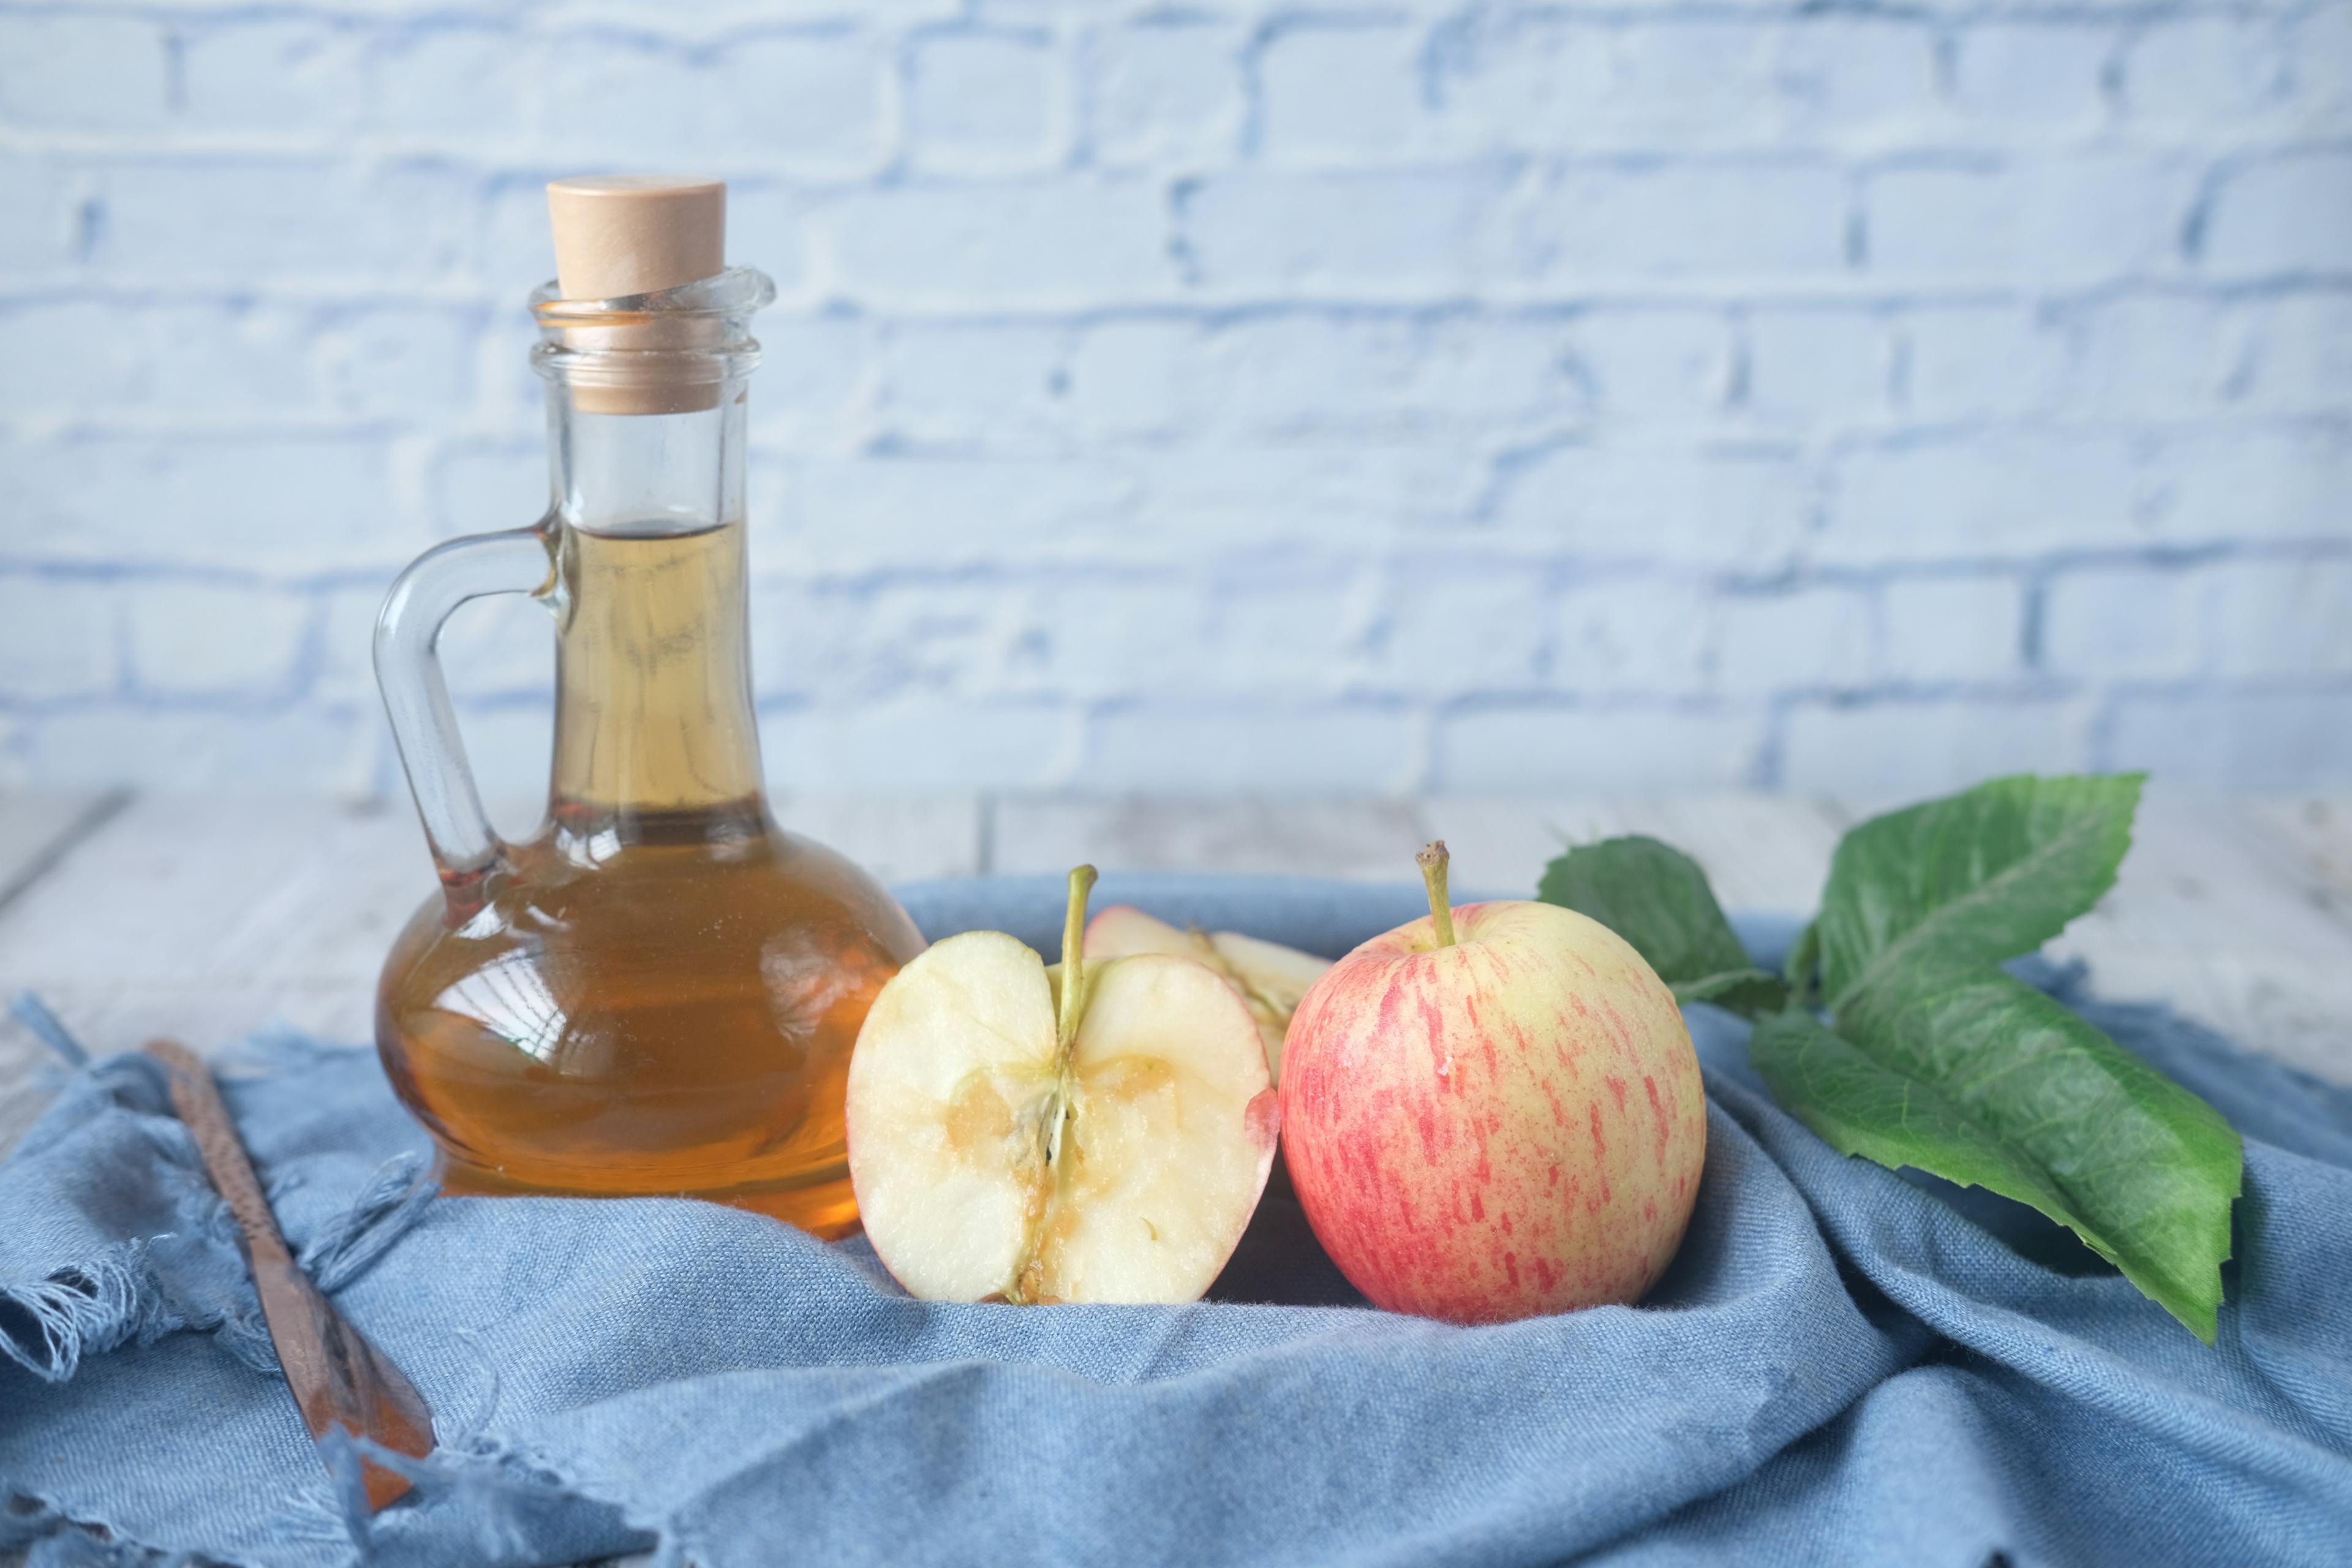 Jak pić ocet jabłkowy? Spożywanie octu jabłkowego dla zdrowia. Ocet jabłkowy na odchudzanie - fakt czy mit? Ocet jabłkowy - dlaczego warto go pić? 